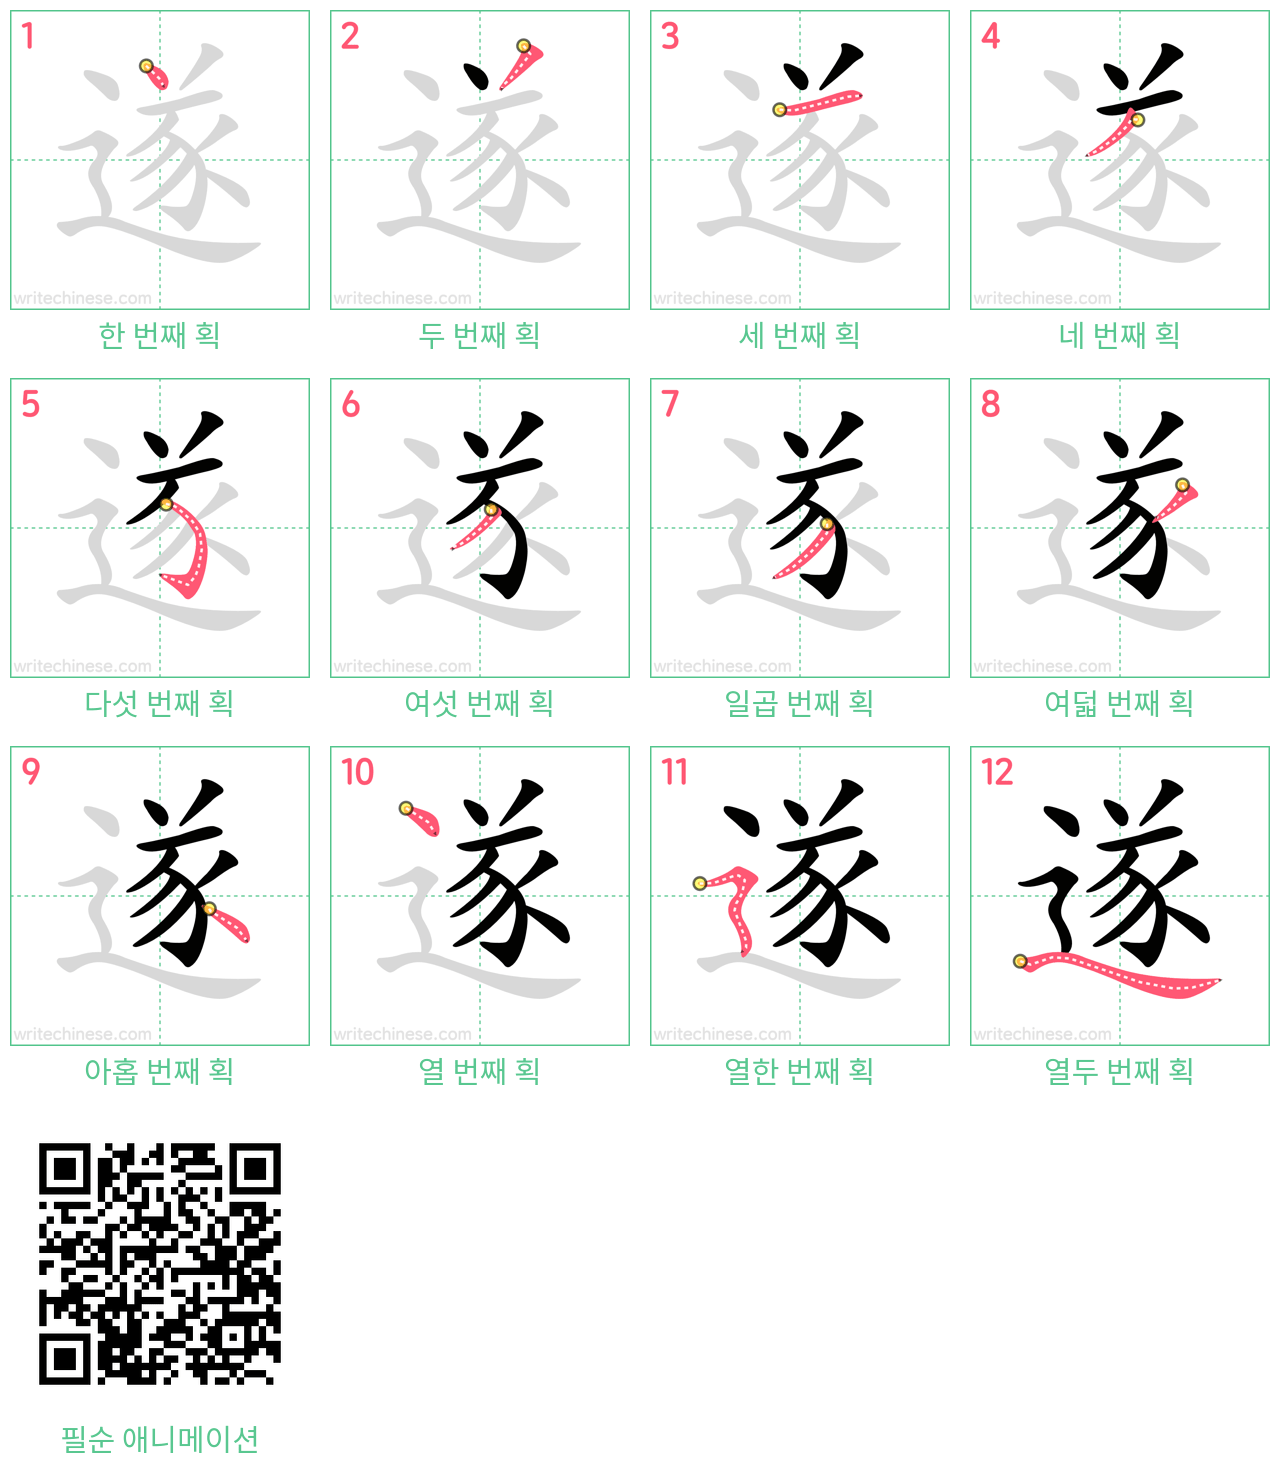 遂 step-by-step stroke order diagrams